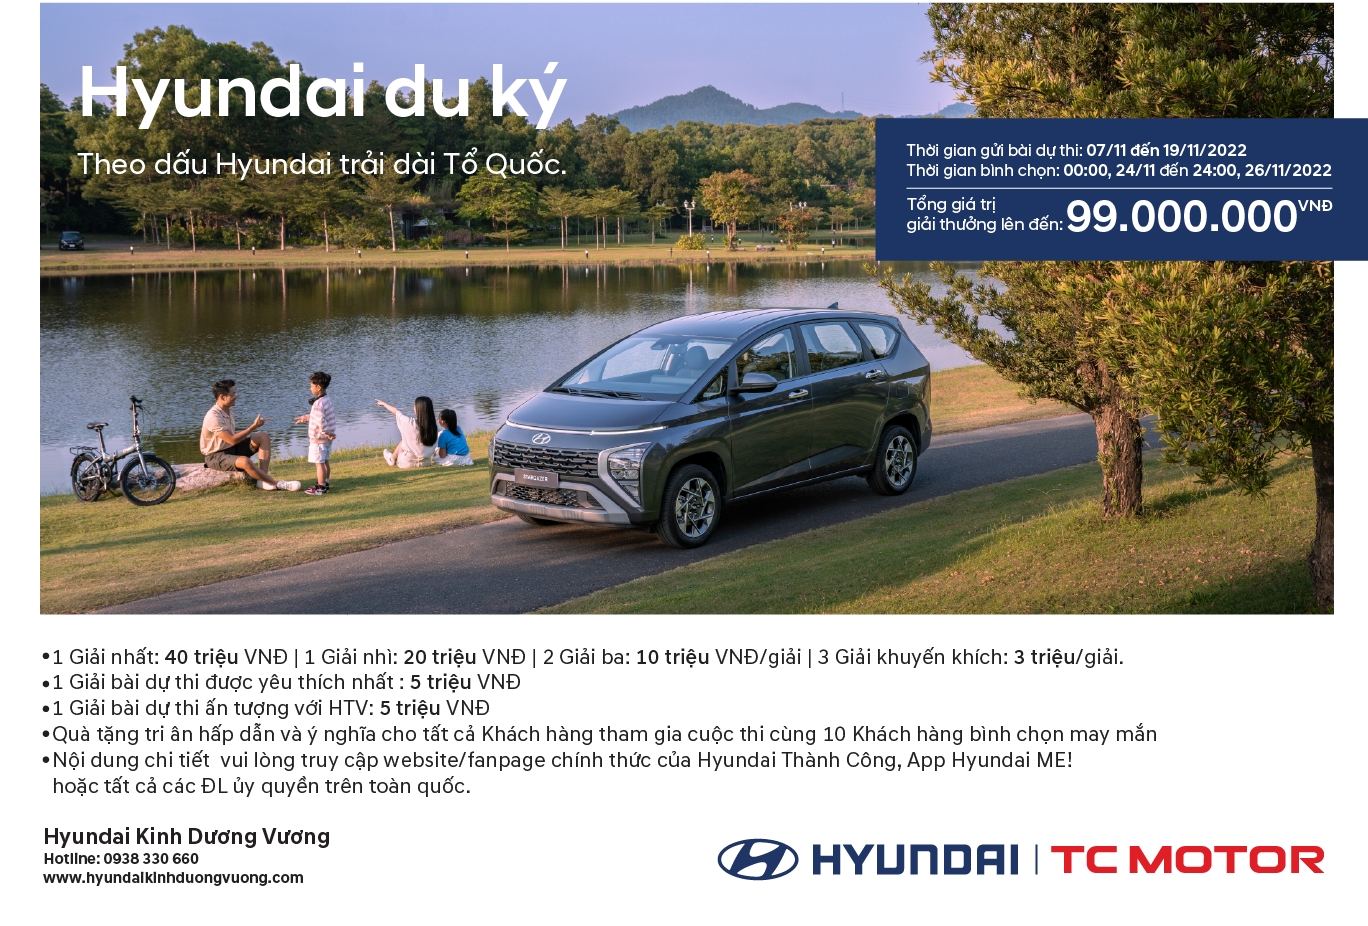 CUỘC THI “HYUNDAI DU KÝ” - “Theo dấu Hyundai trải dài tổ quốc”